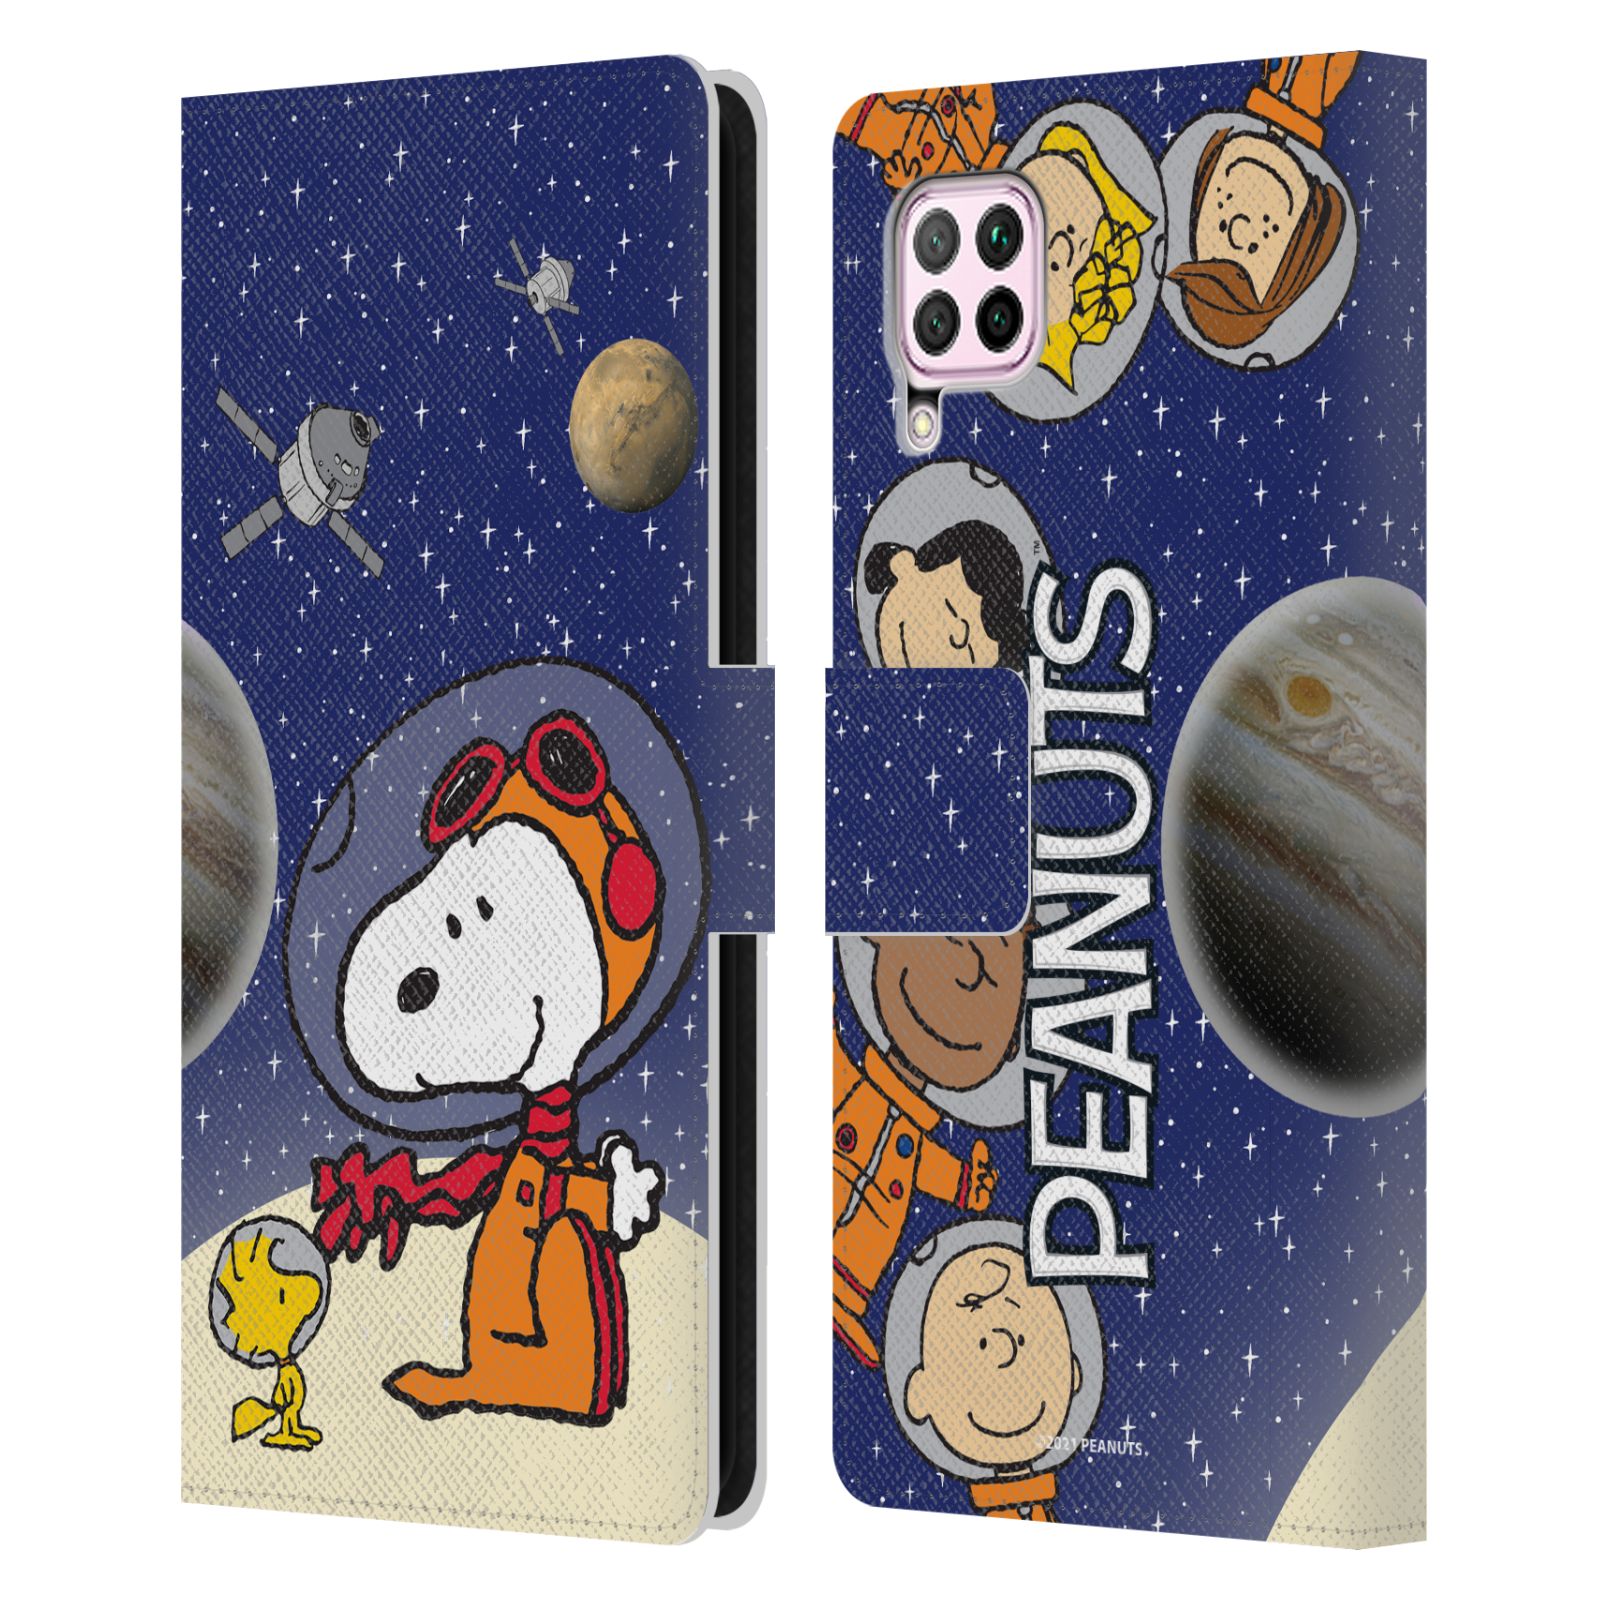 Pouzdro na mobil Huawei P40 LITE - HEAD CASE - Peanuts Snoopy ve vesmíru 2